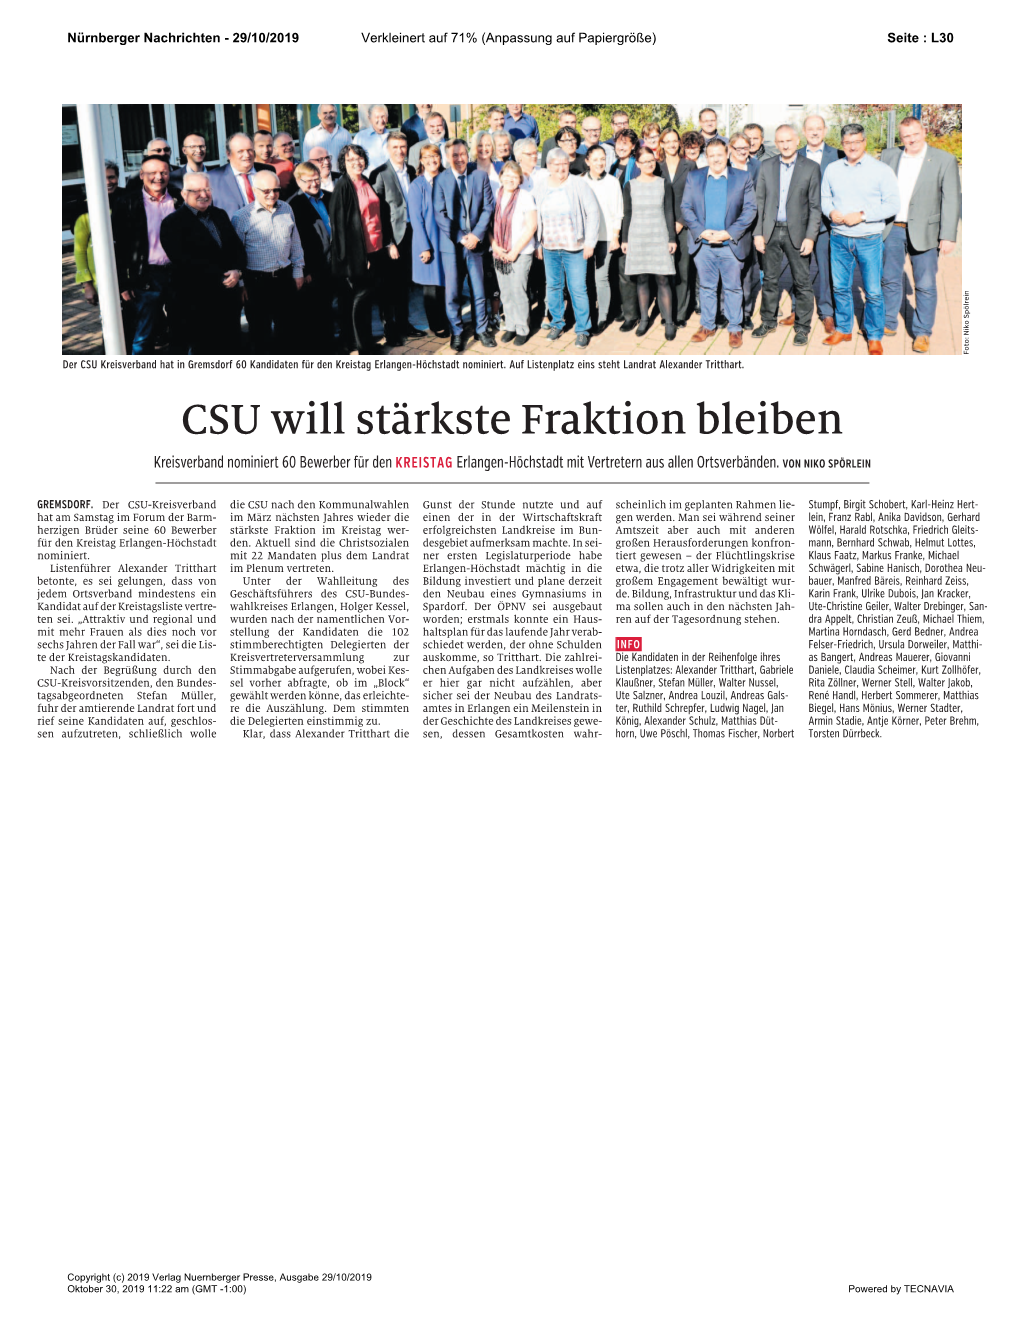 CSU Will Stärkste Fraktion Bleiben